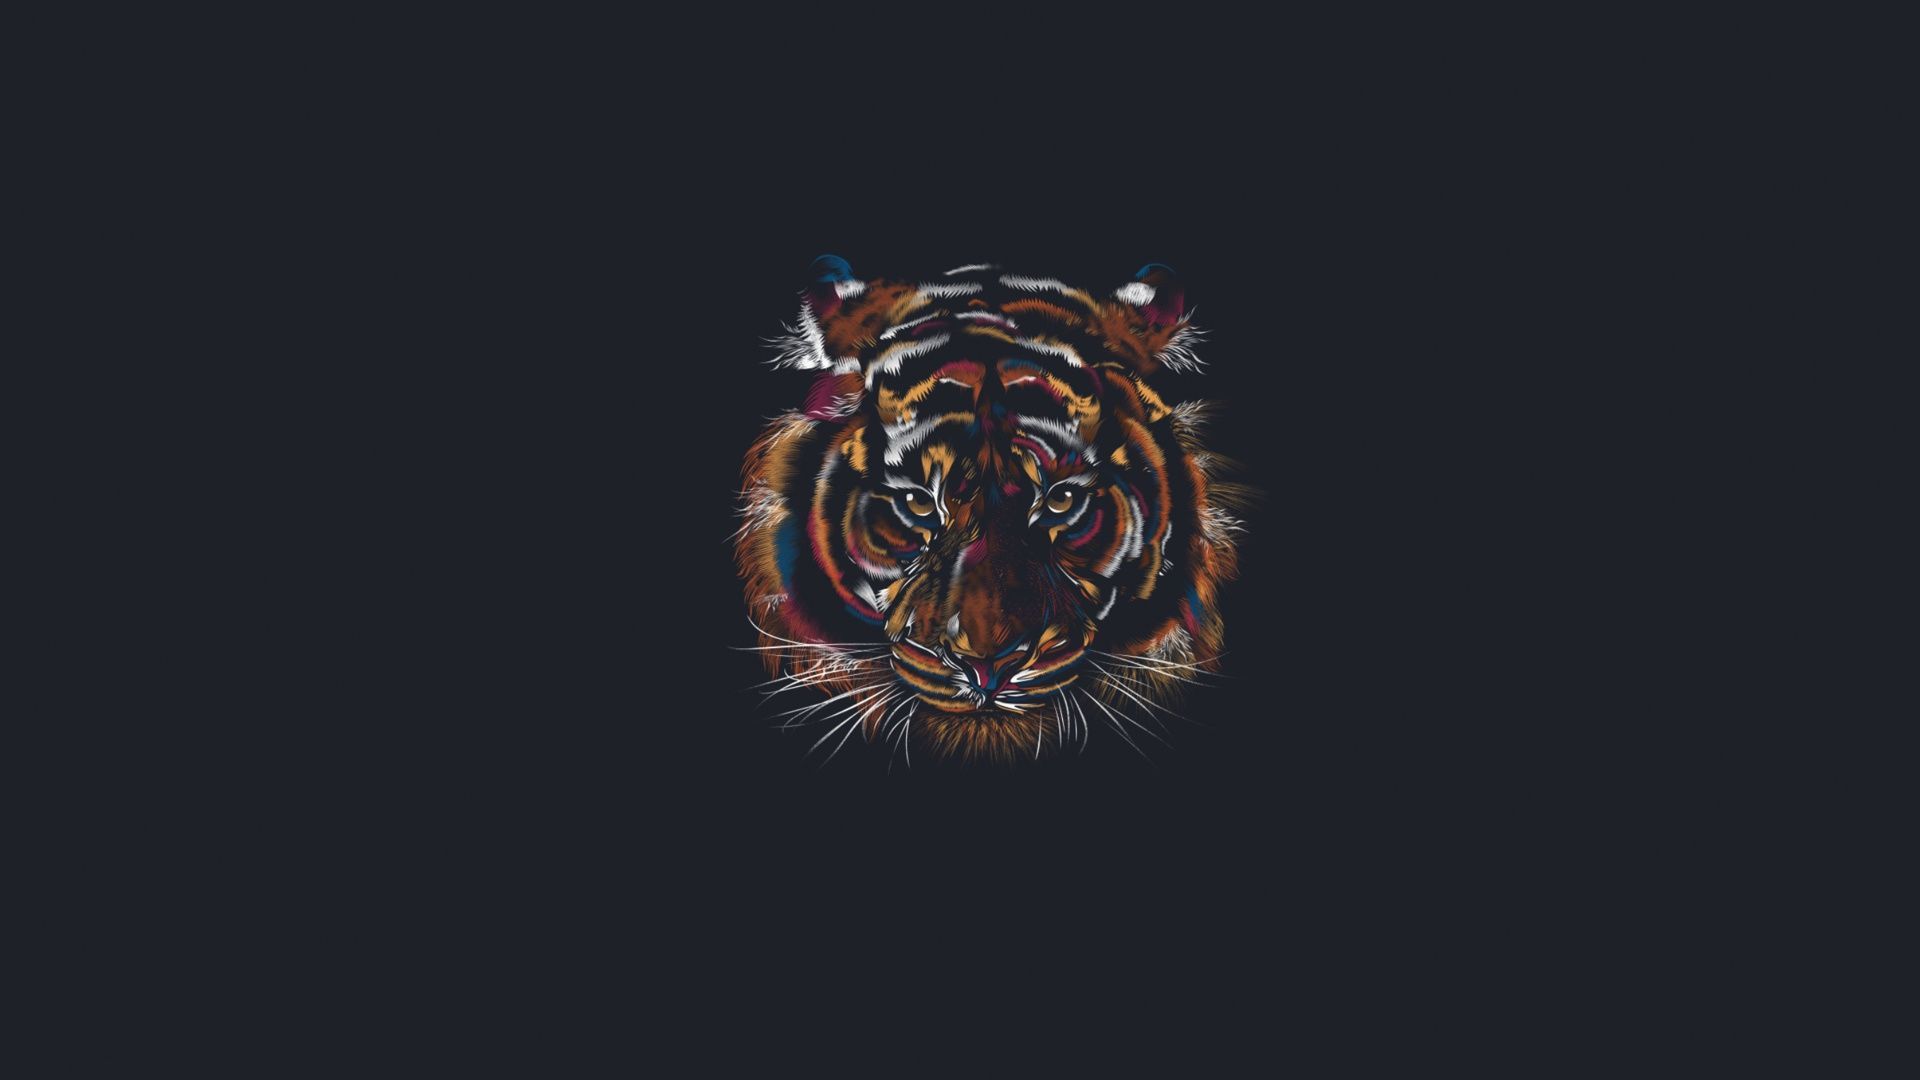 Minimalist Tiger Wallpaper Free Minimalist Tiger Background